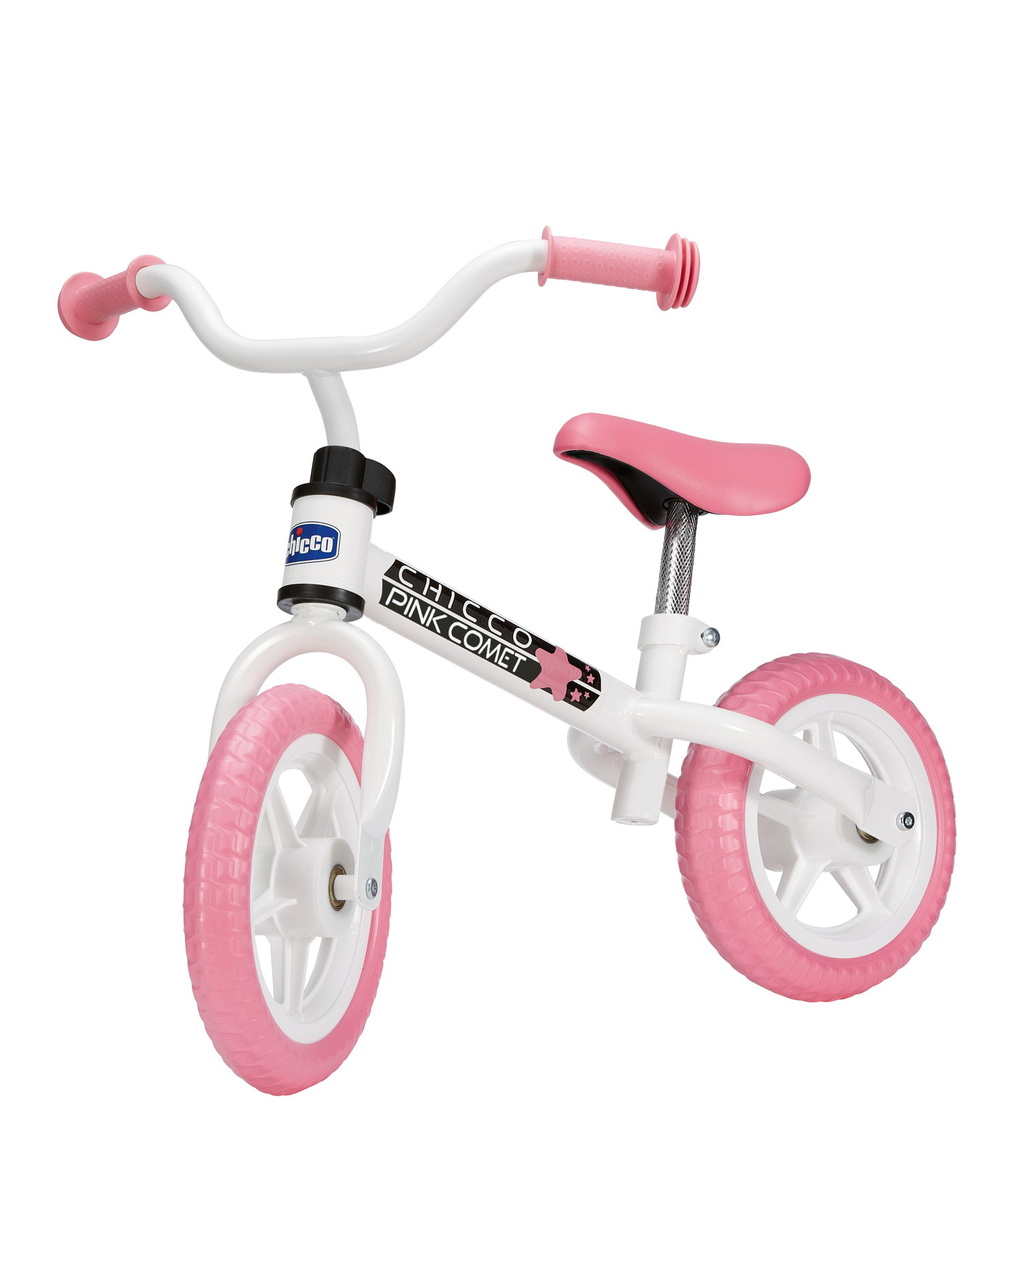 Bicicleta de equilíbrio pink comet 2-5 anos - chicco - Chicco